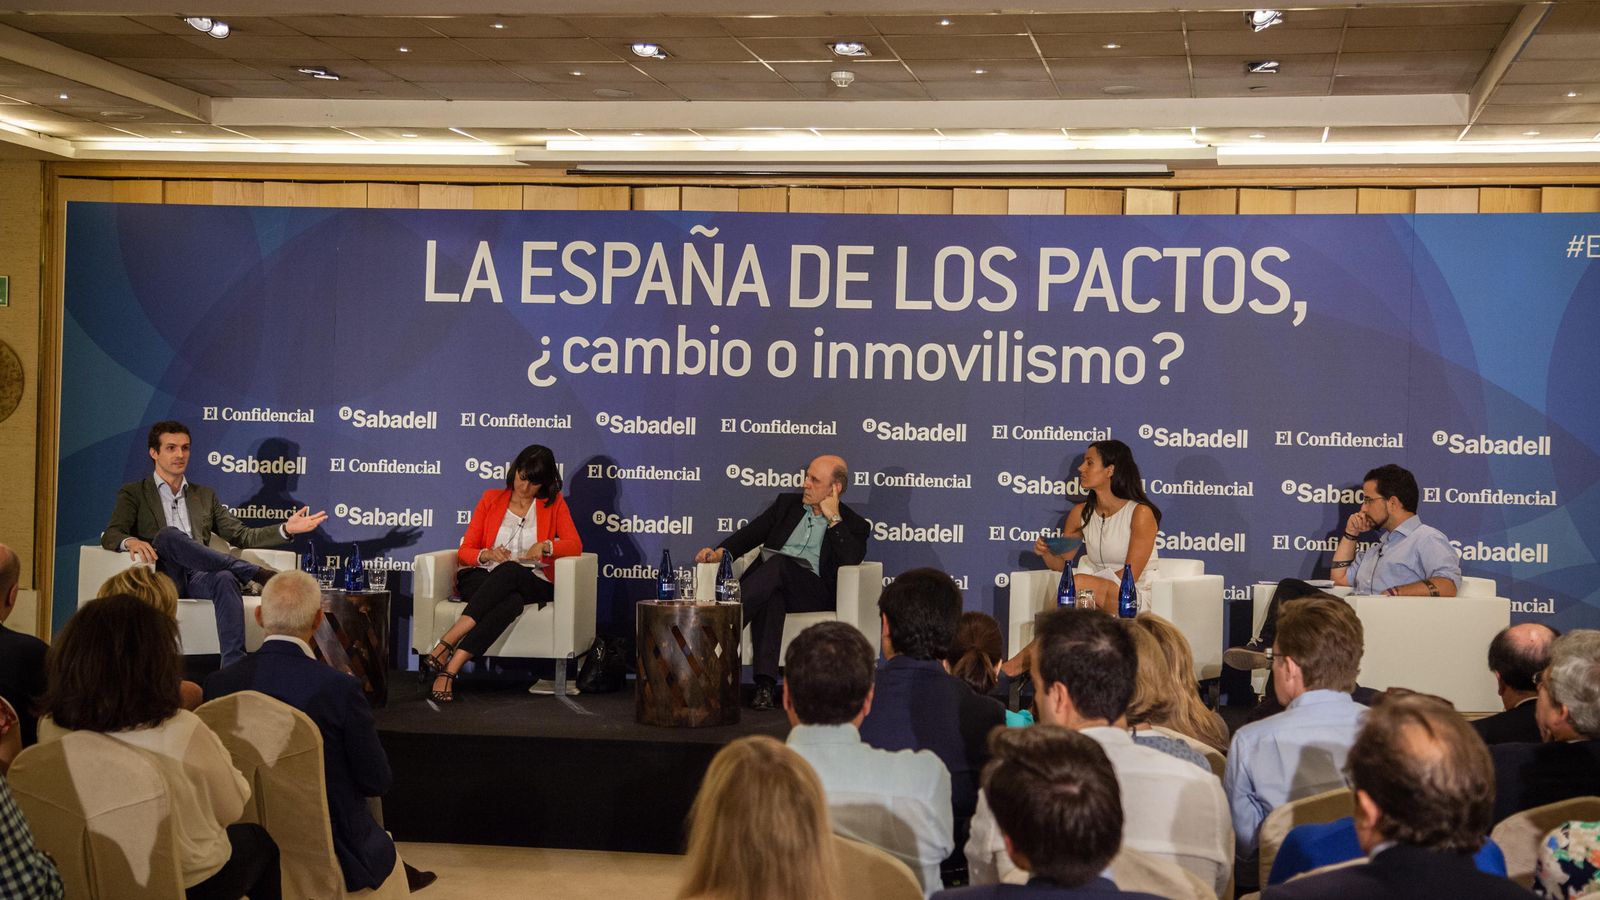 Foto: Un momento del foro "La España de los pactos" organizado por El Confidencial y el Banco Sabadell. (Jorge Álvaro)